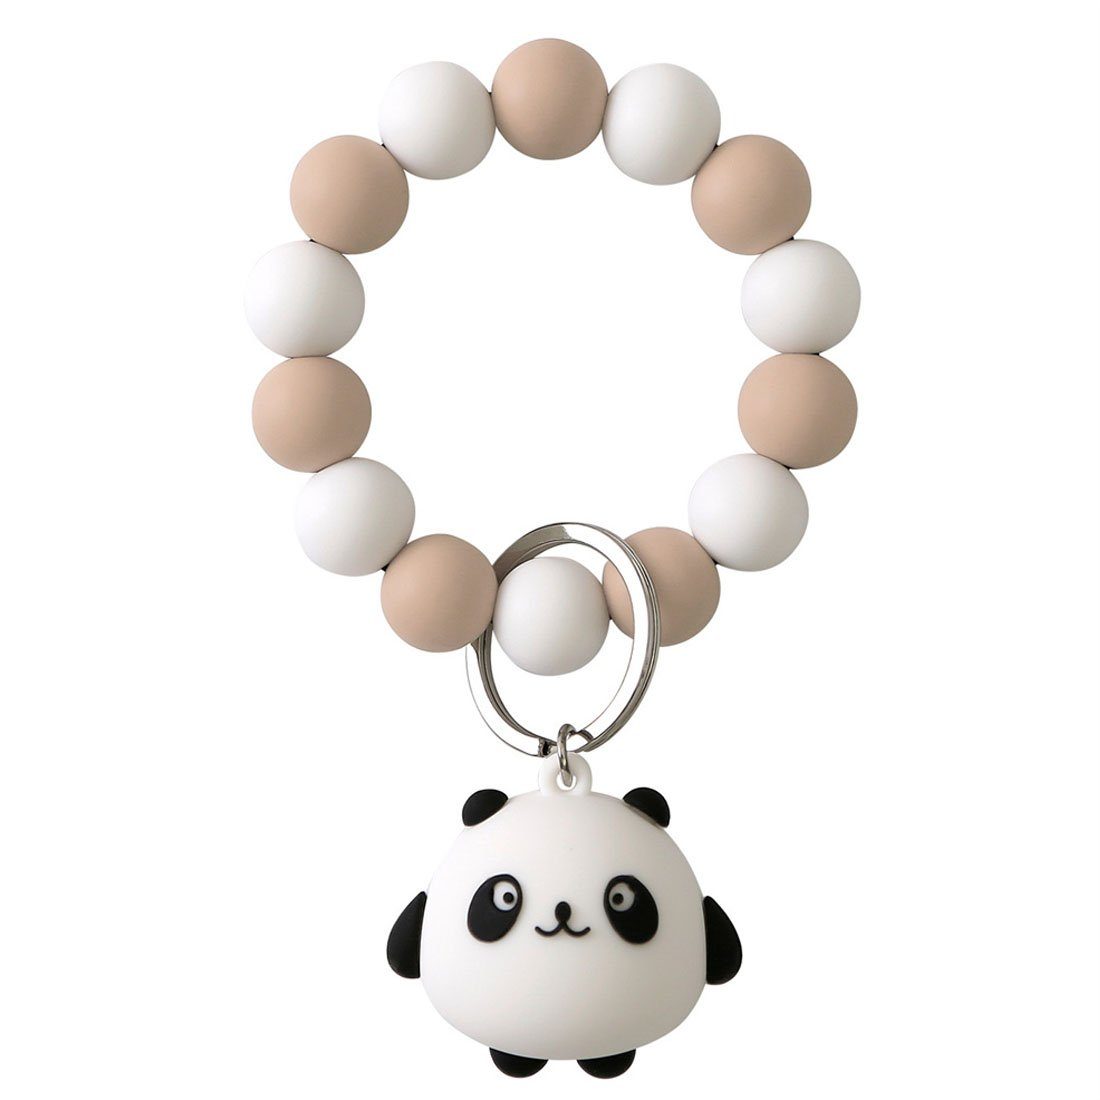 DÖRÖY Schlüsselanhänger Panda Silikon-Schlüsselanhänger für das Handgelenk mit Perlen khaki